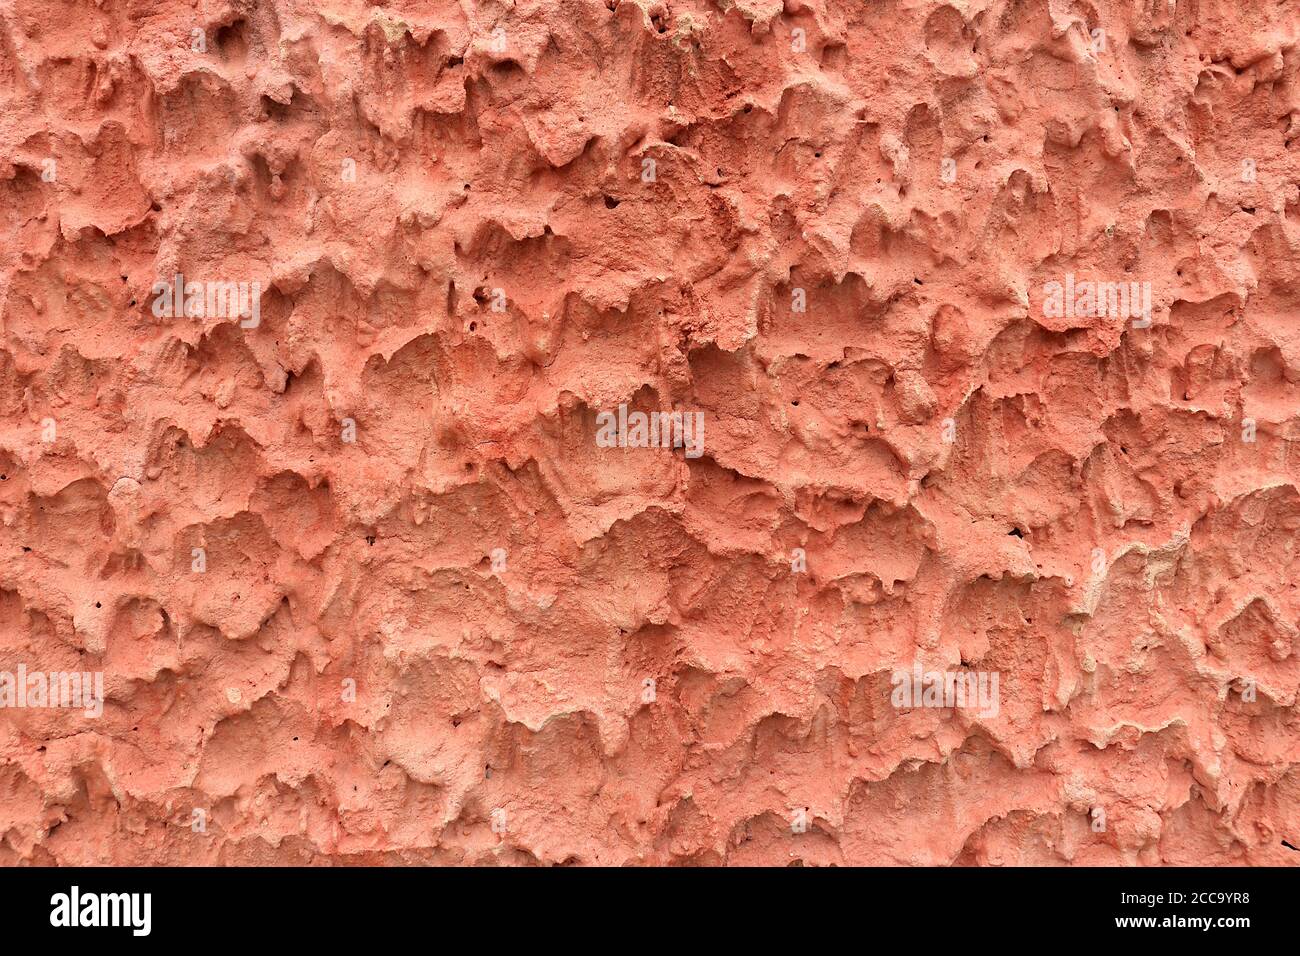 Die Oberfläche der Zementwand macht sie rau. Es ist eine ungewöhnliche Textur mit einer rötlich-rosa Farbe. Stockfoto